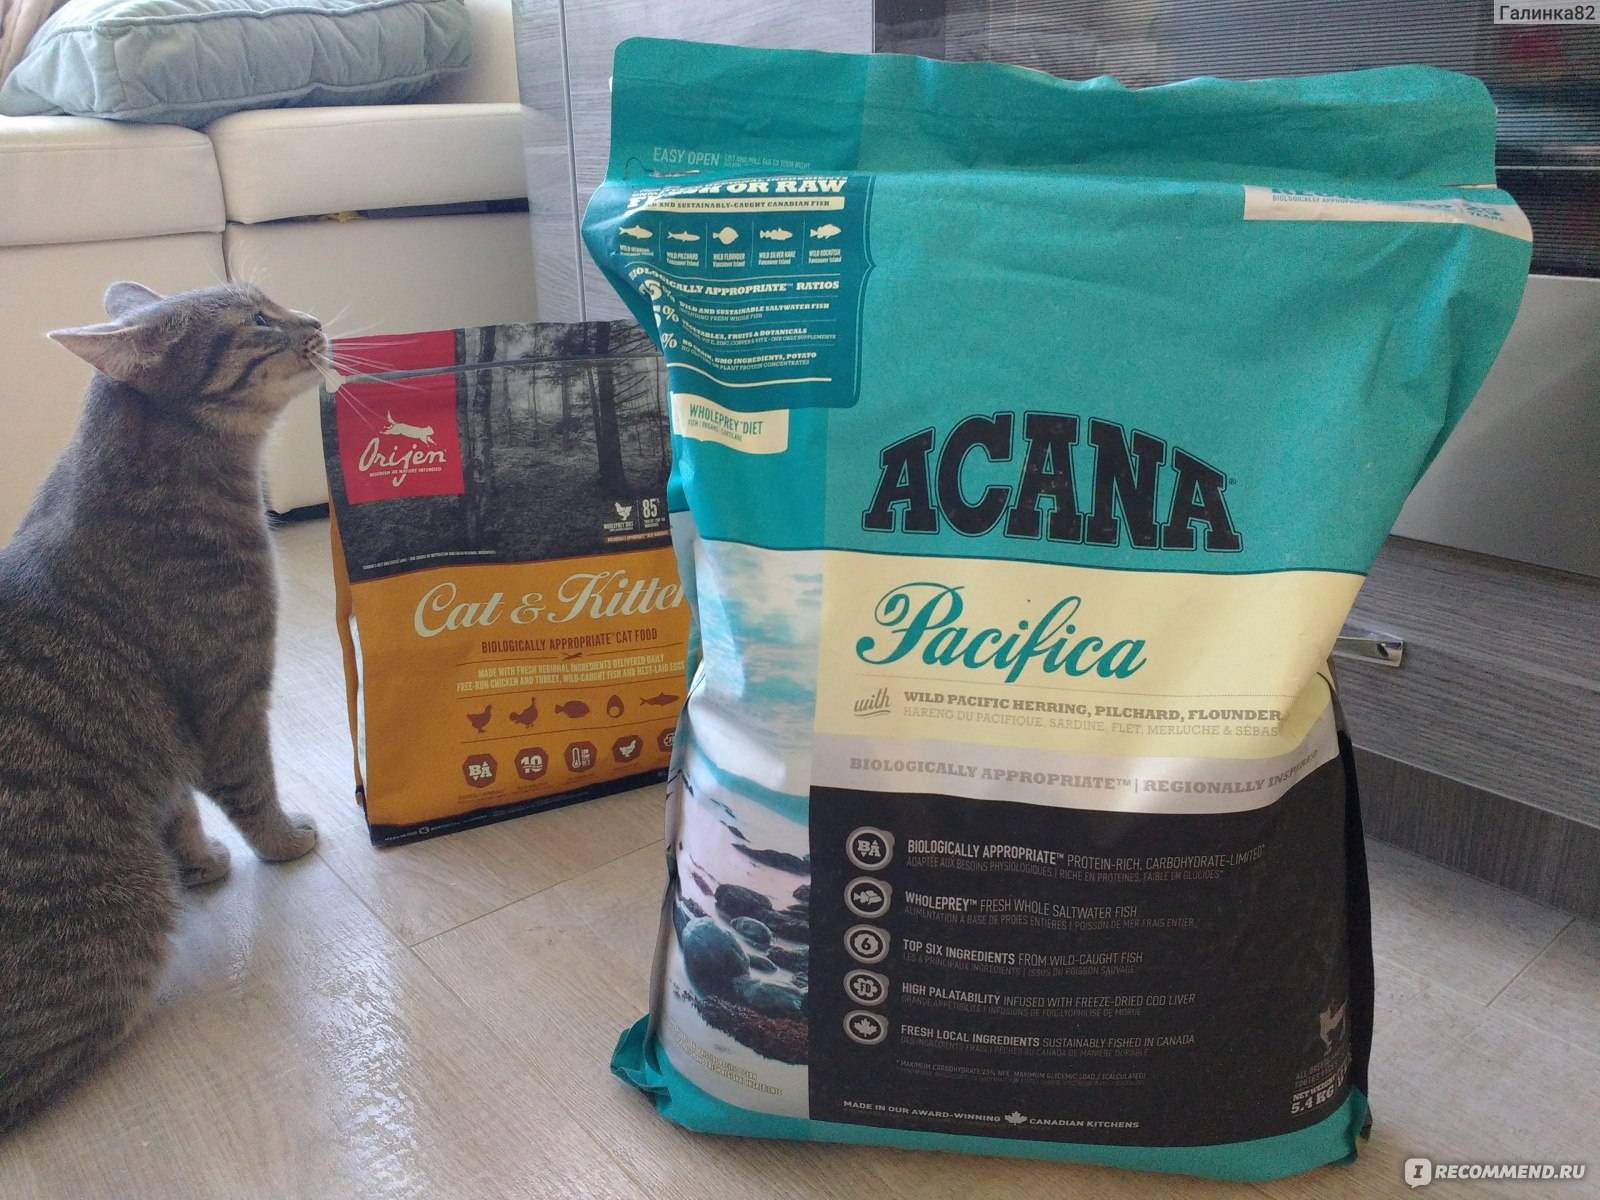 Acana (акана): обзор корма для кошек, состав, отзывы